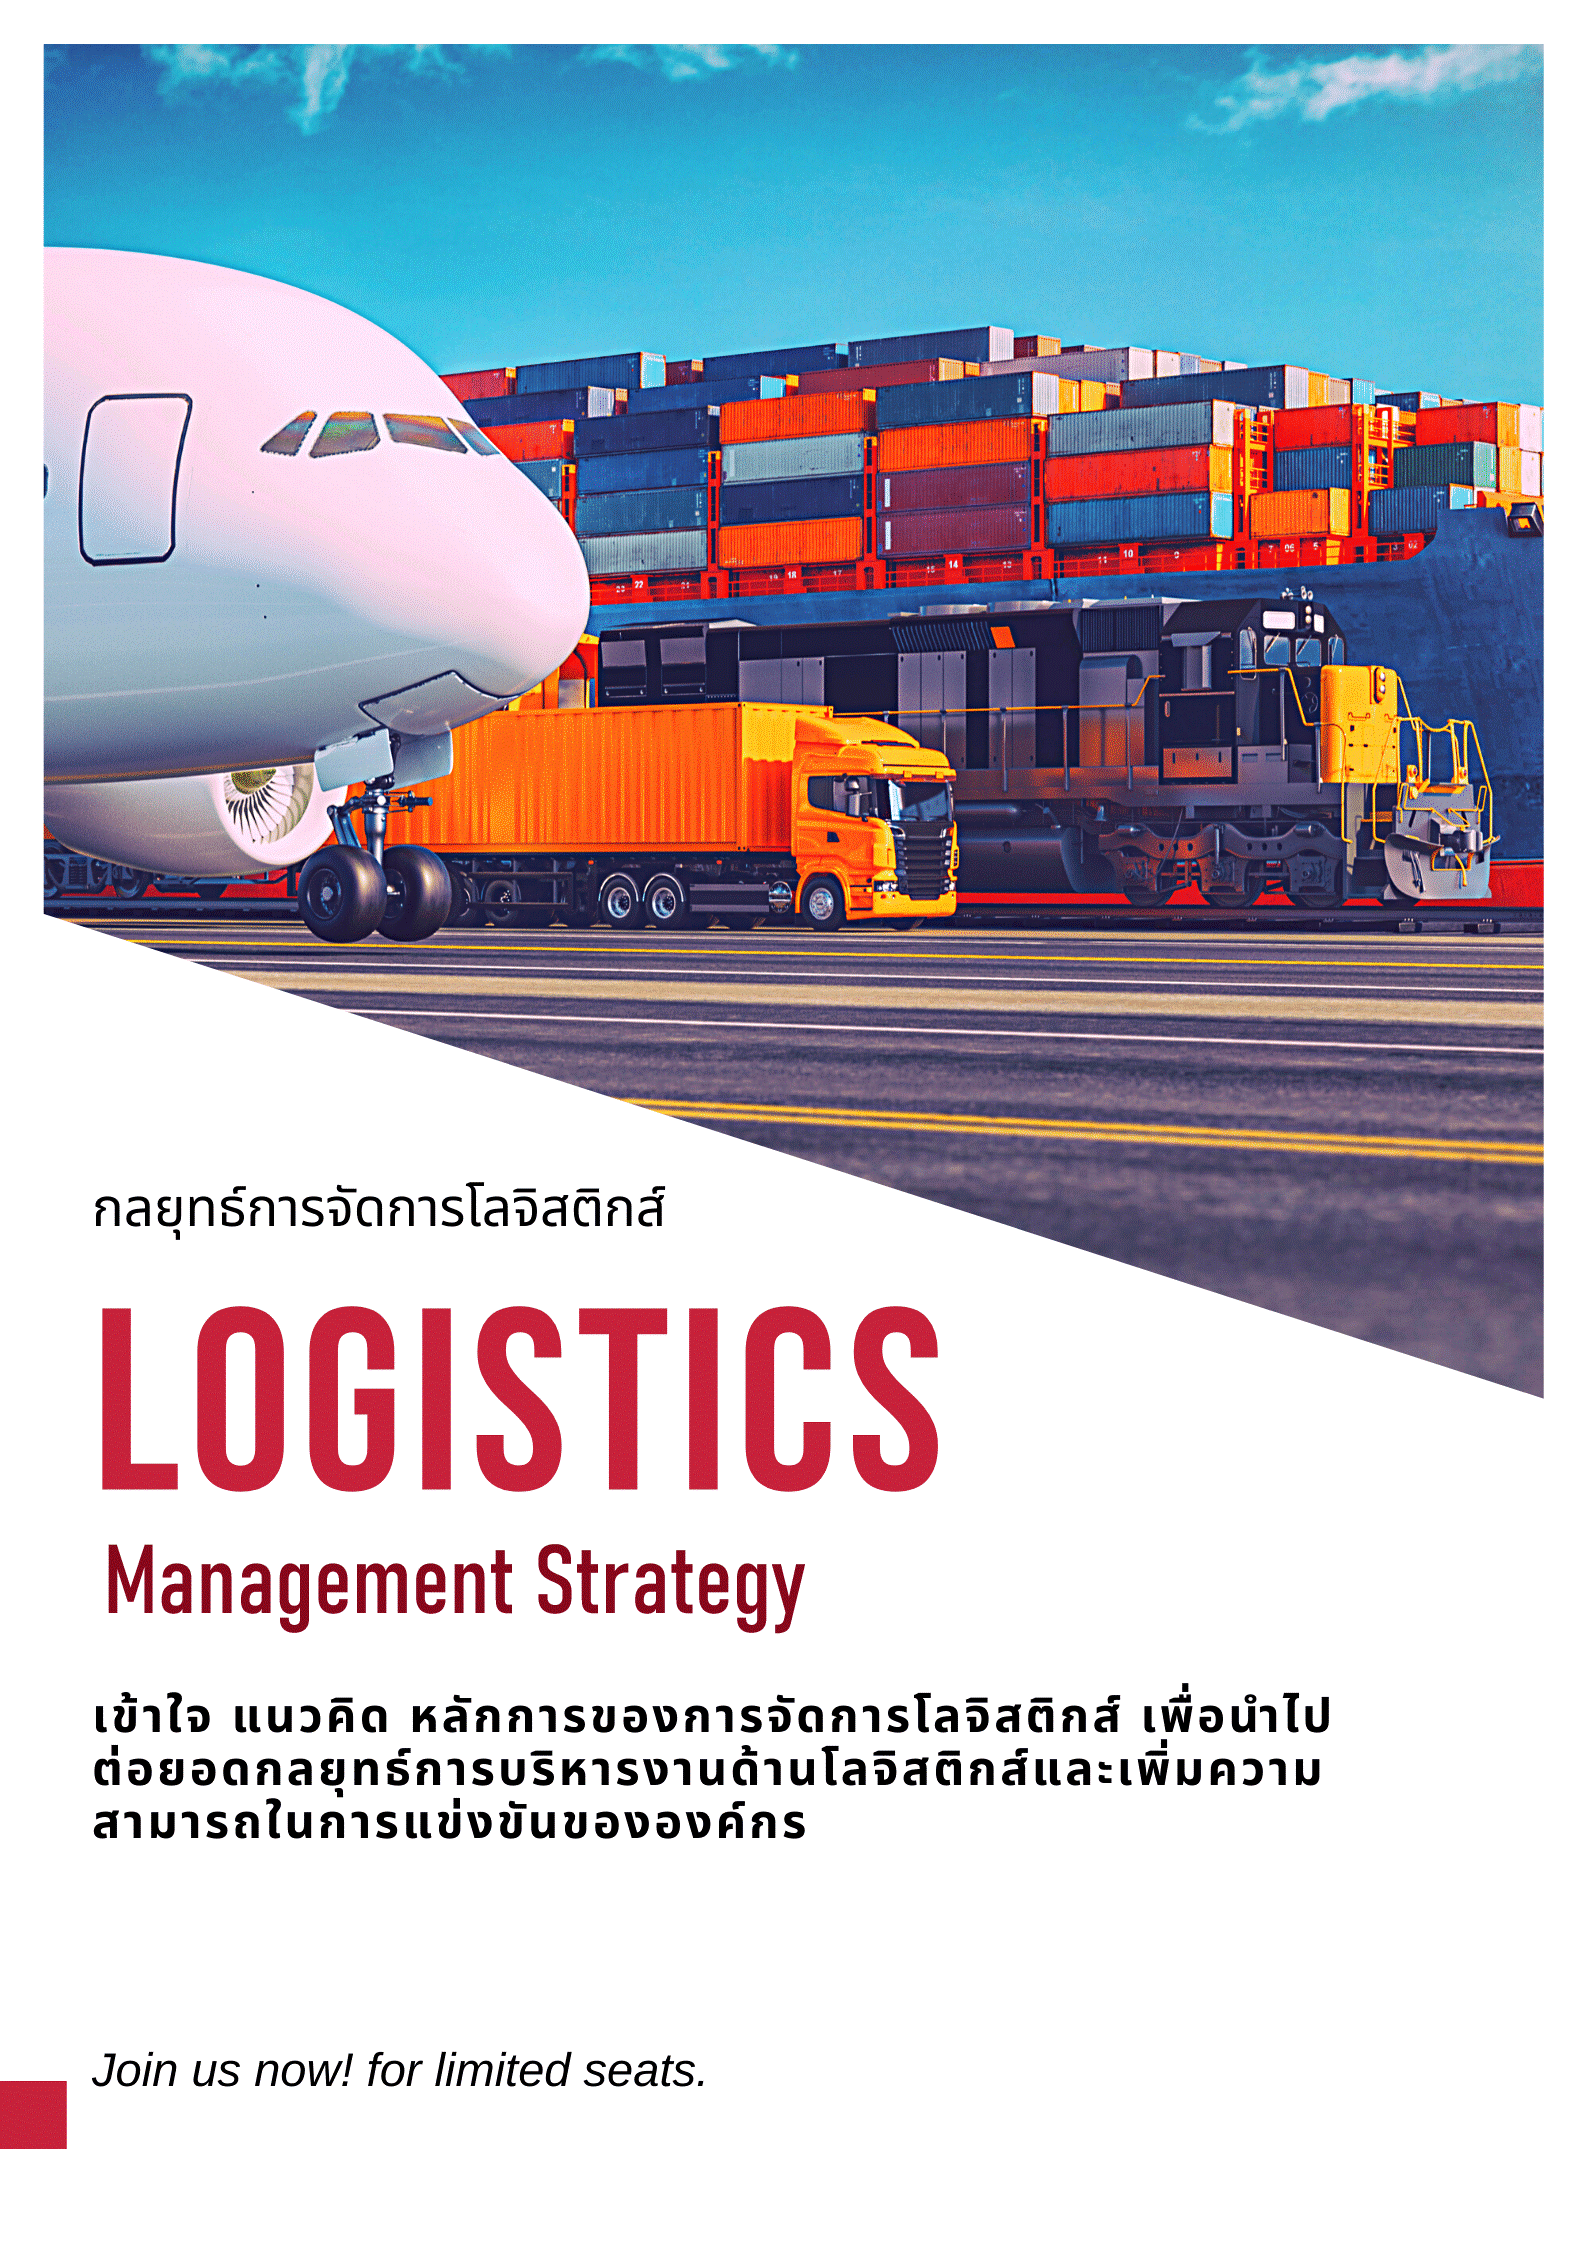 หลักสูตร กลยุทธ์การจัดการโลจิสติกส์ (Logistics Management Strategy)